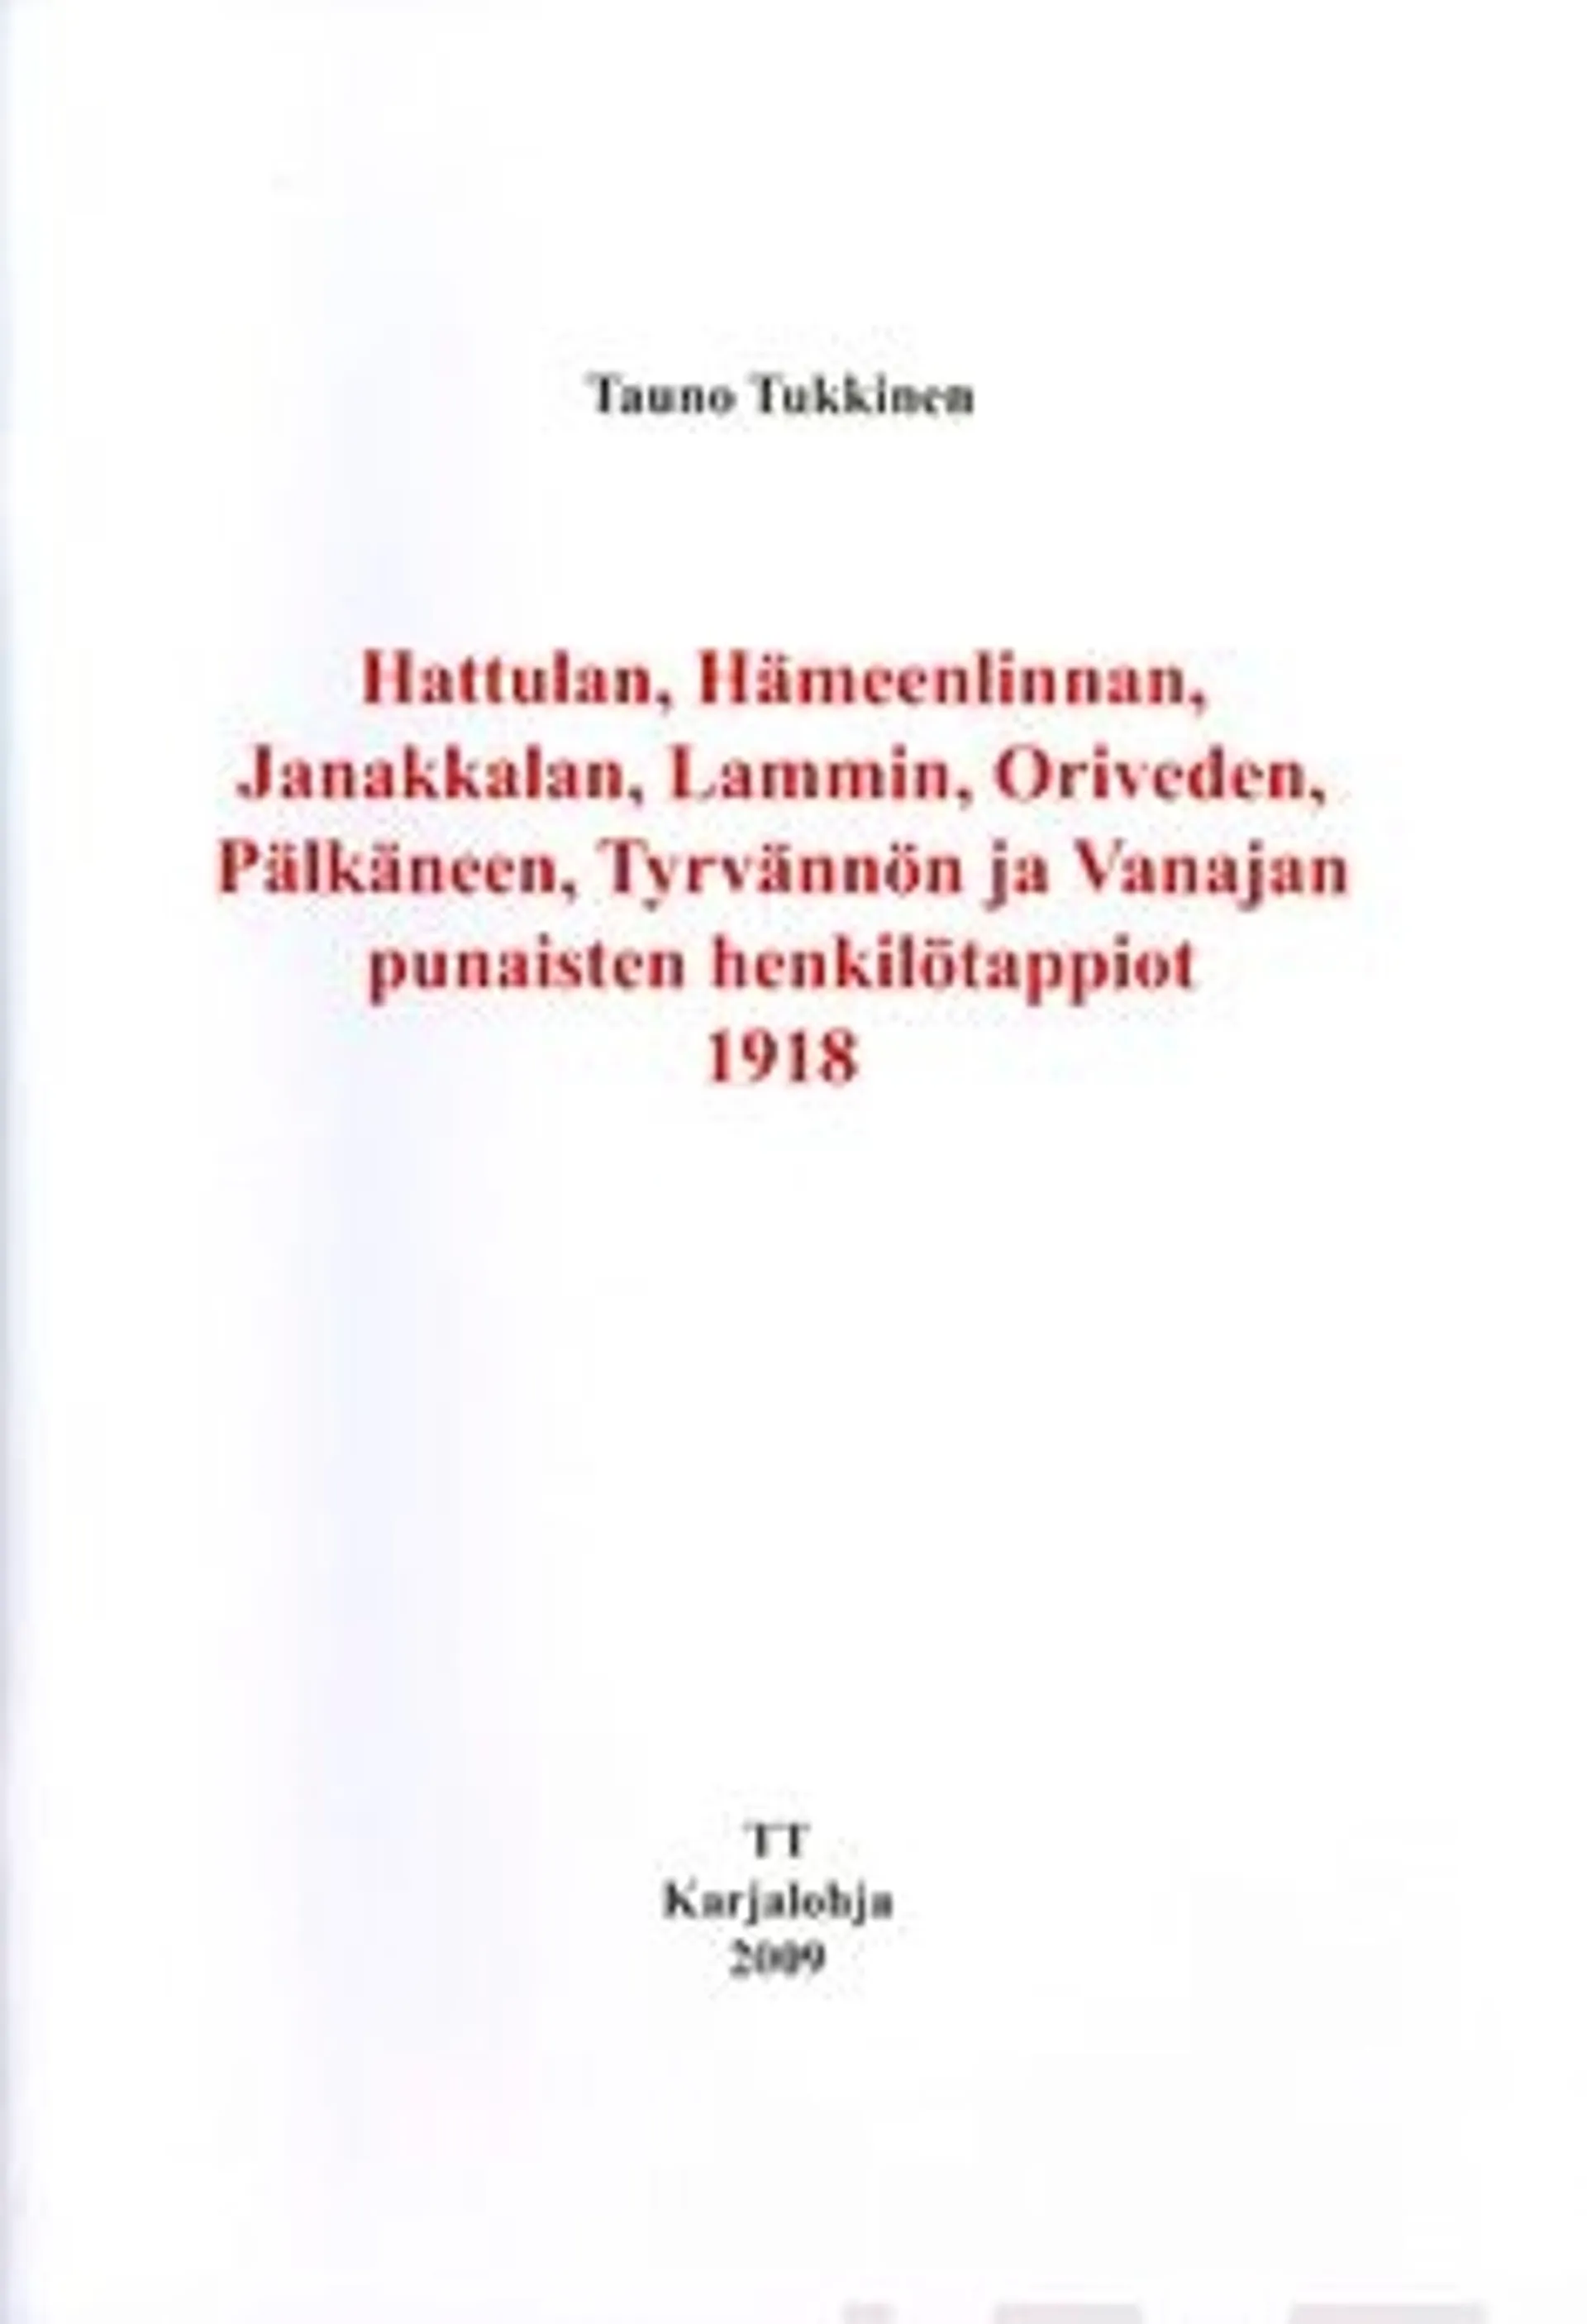 Tukkinen, Hattulan, Hämeenlinnan, Janakkalan, Lammin, Luopioisten, Oriveden, Pälkäneen, Tyrvännön ja Vanajan punaisten henkilötappiot 1918